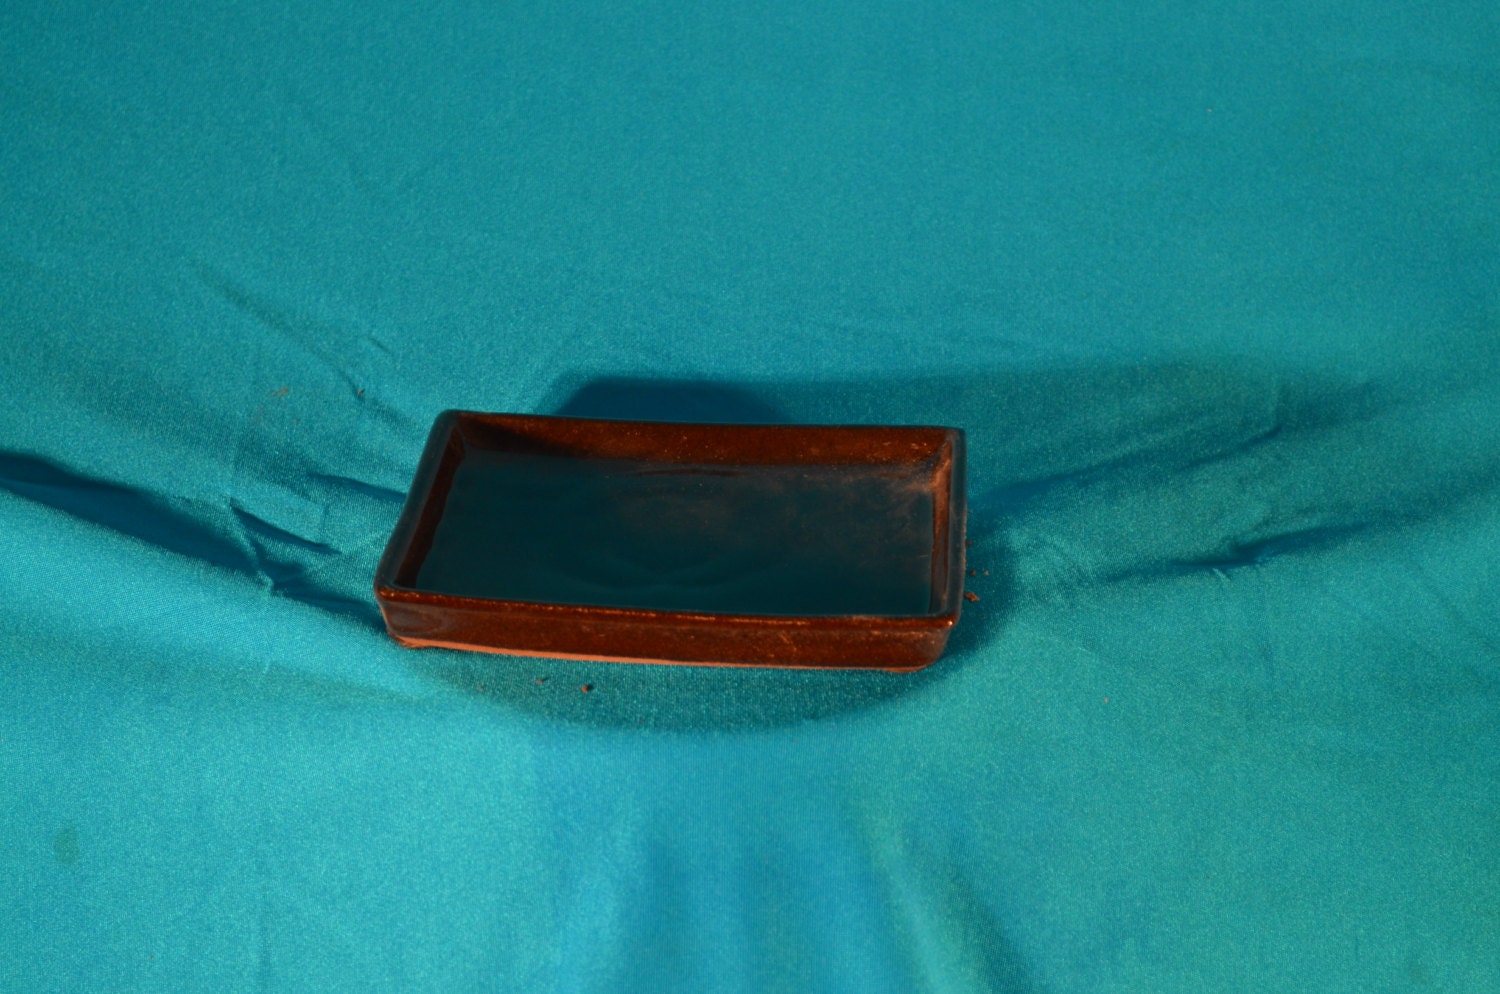  Bonsai  pot  tray  Ceramic Humidity  tray  6 rectangular